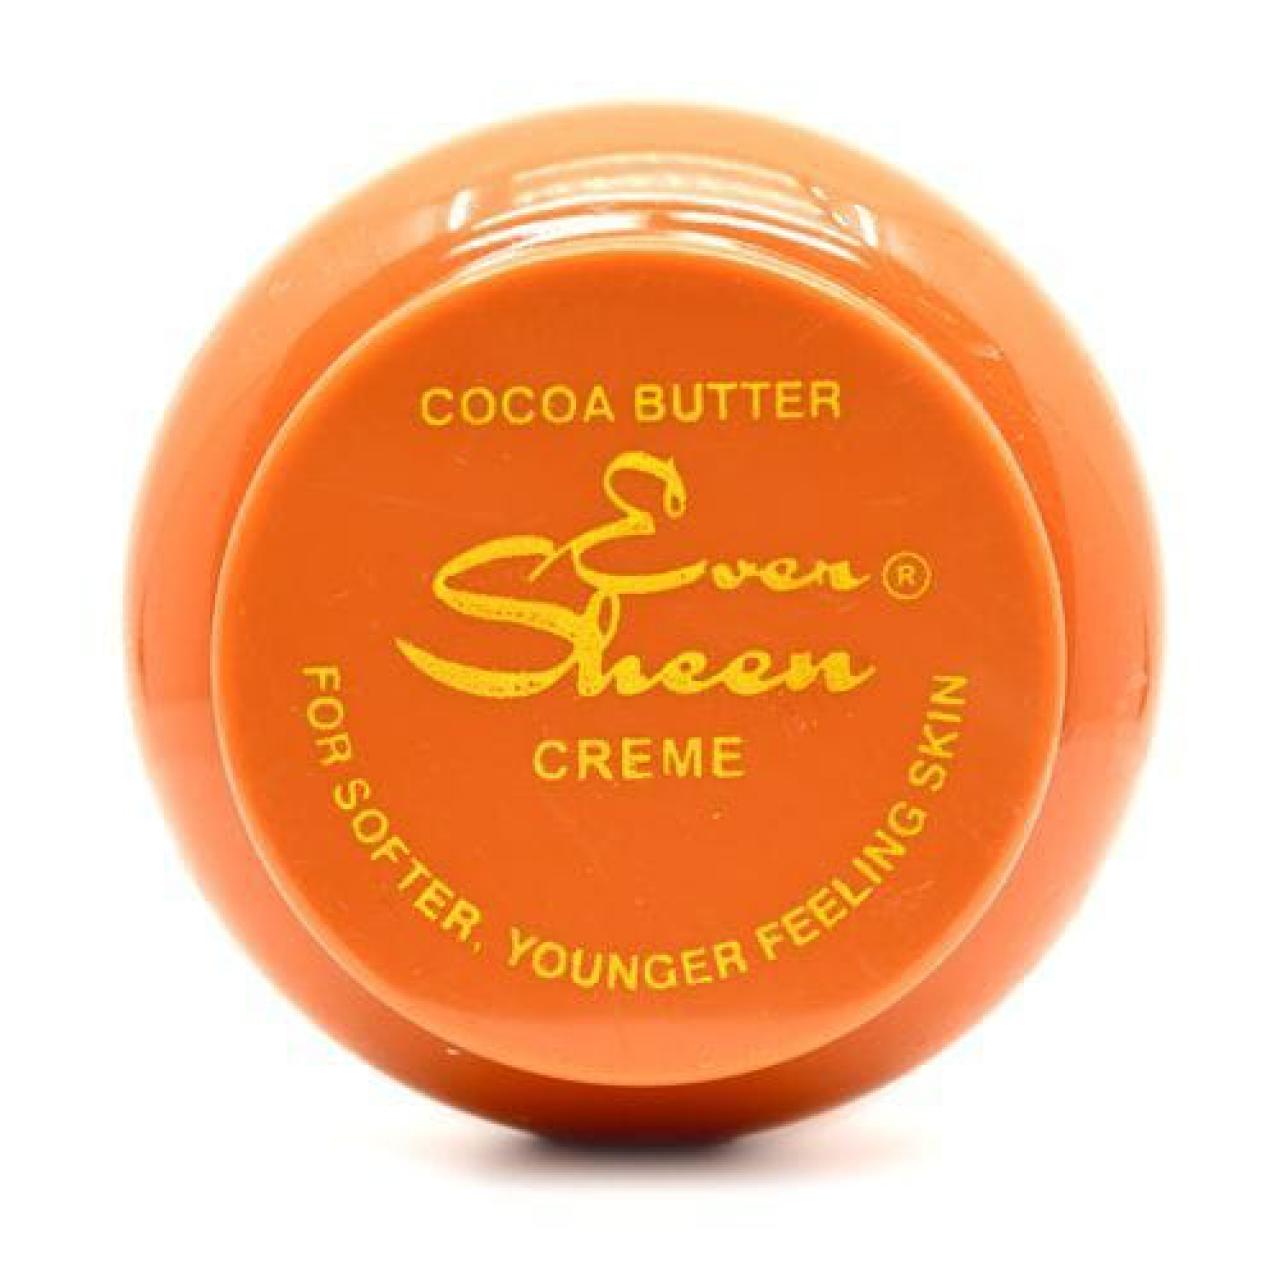 Ever Sheen cream butter